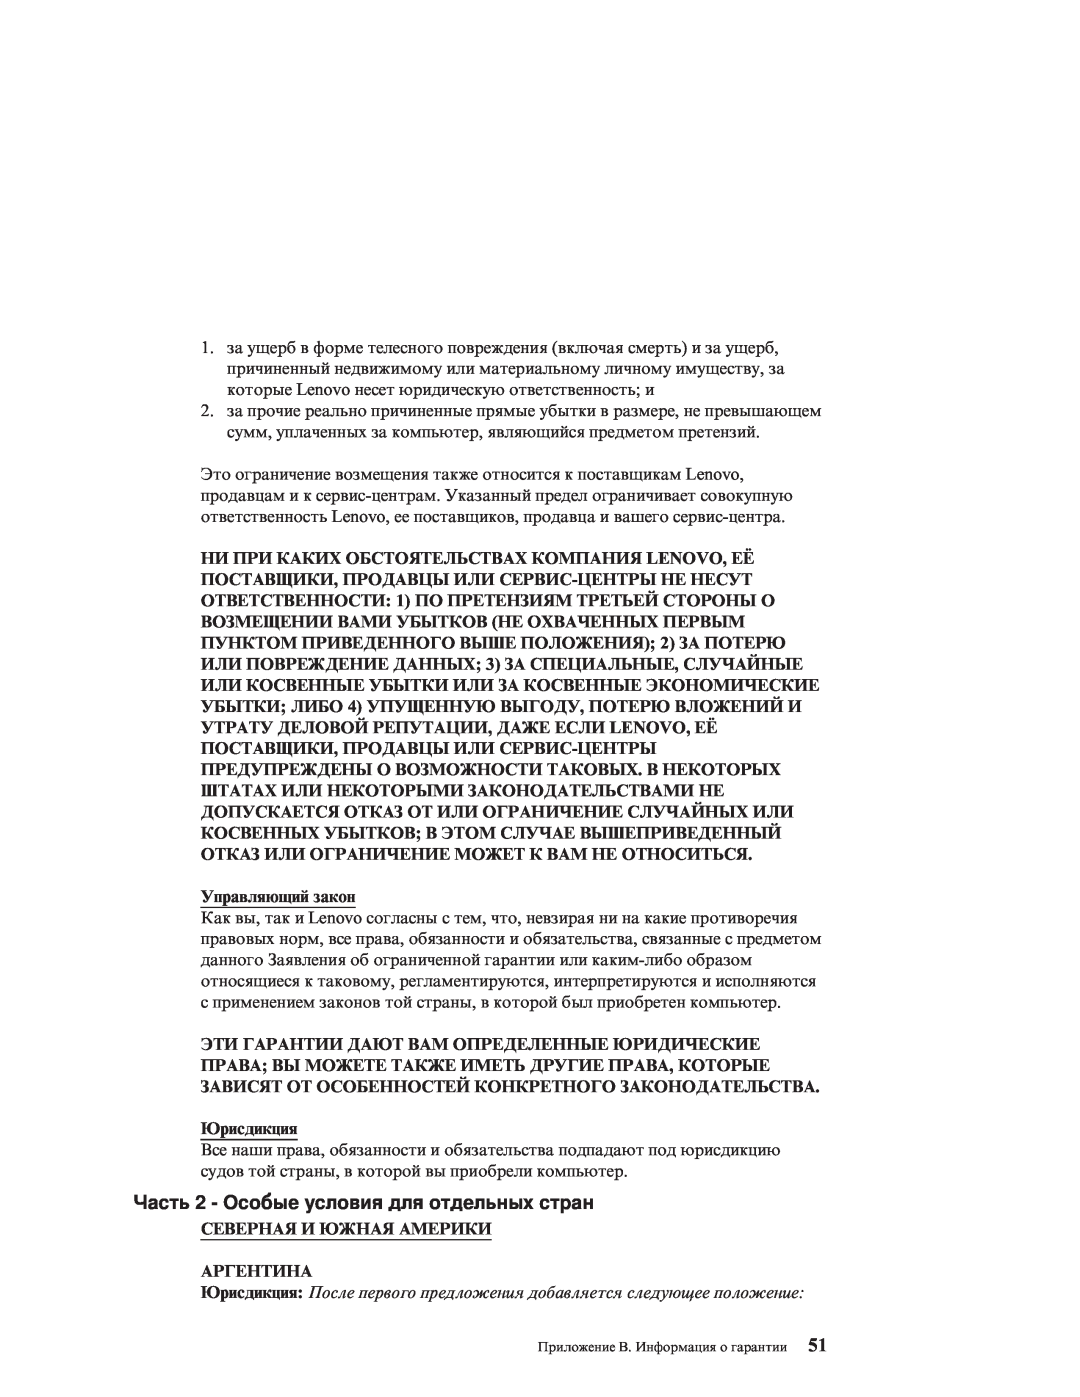 IBM R51E Часть 2 - Особые условия для отдельных стран, Управляющий закон, Юрисдикция, Северная И Южная Америки Аргентина 